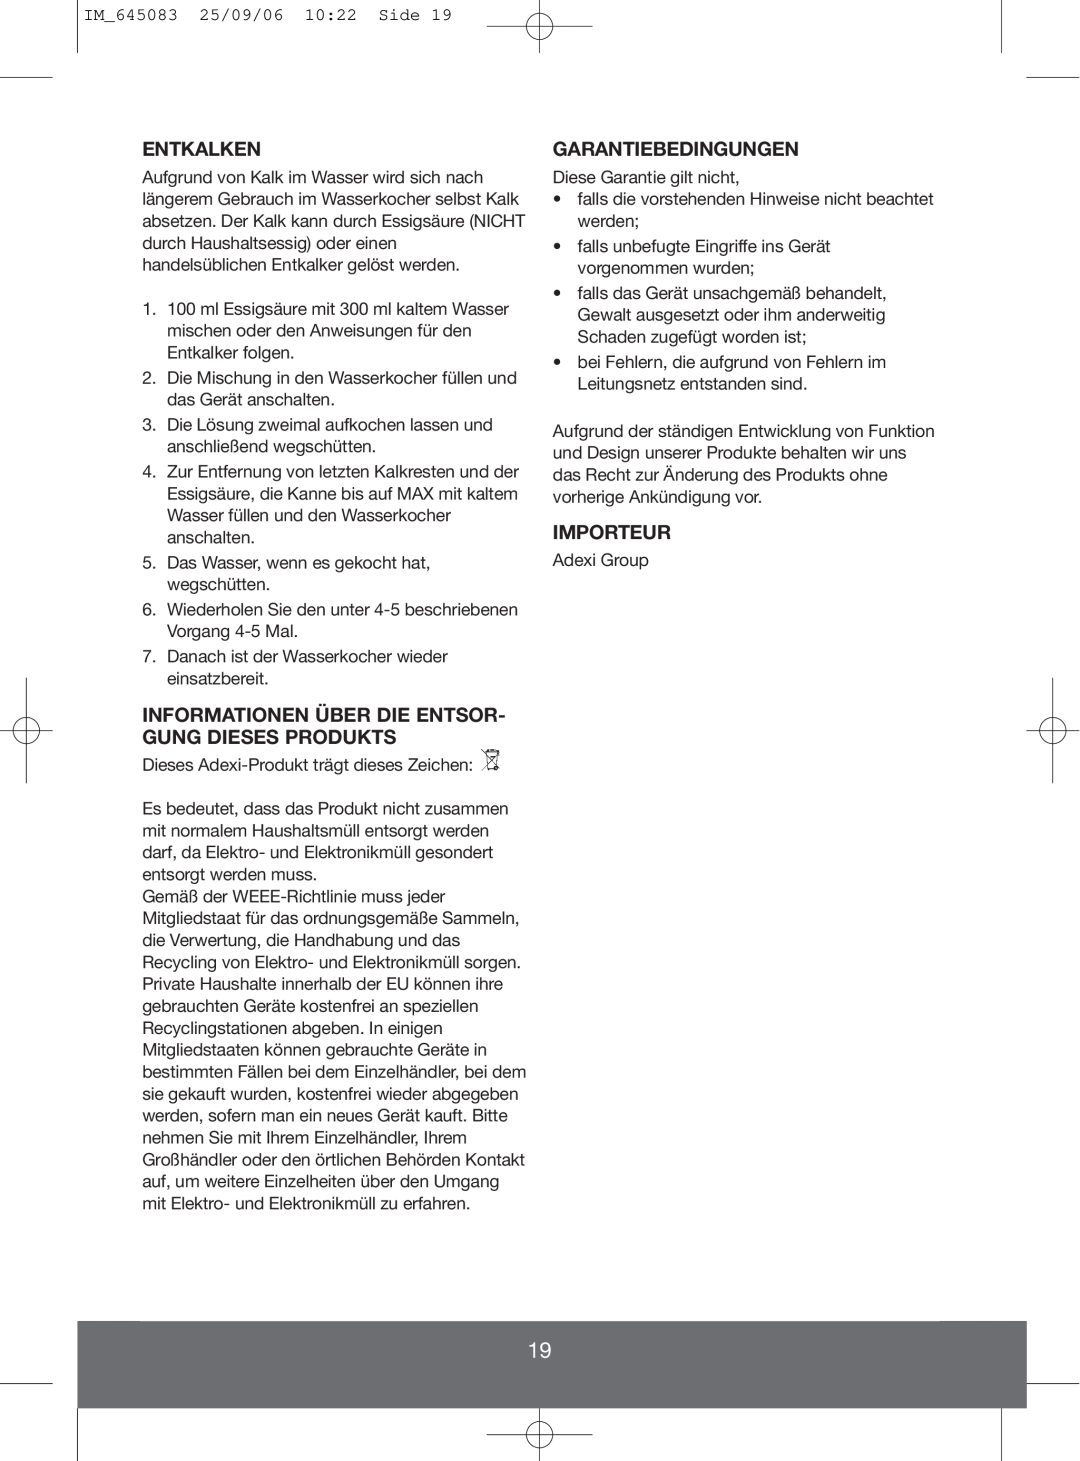 Melissa 645-083 manual Entkalken, Informationen Über Die Entsor- Gung Dieses Produkts, Garantiebedingungen, Importeur 